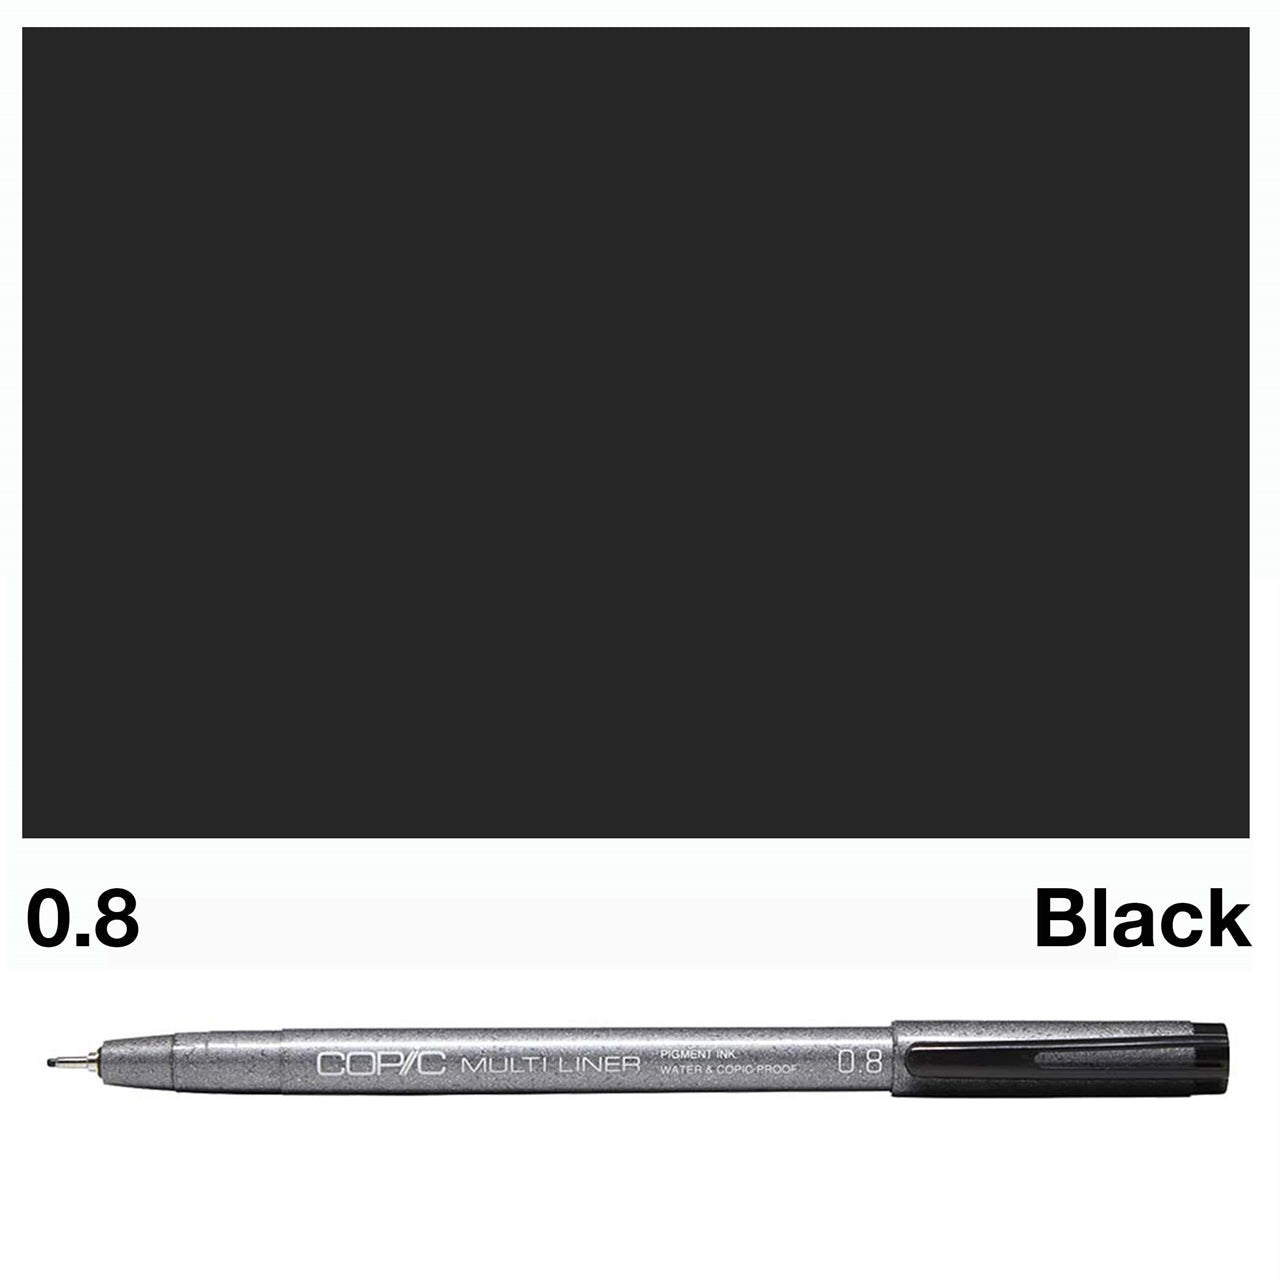 Black Copic Multi Liners 0.8mm - theartshop.com.au